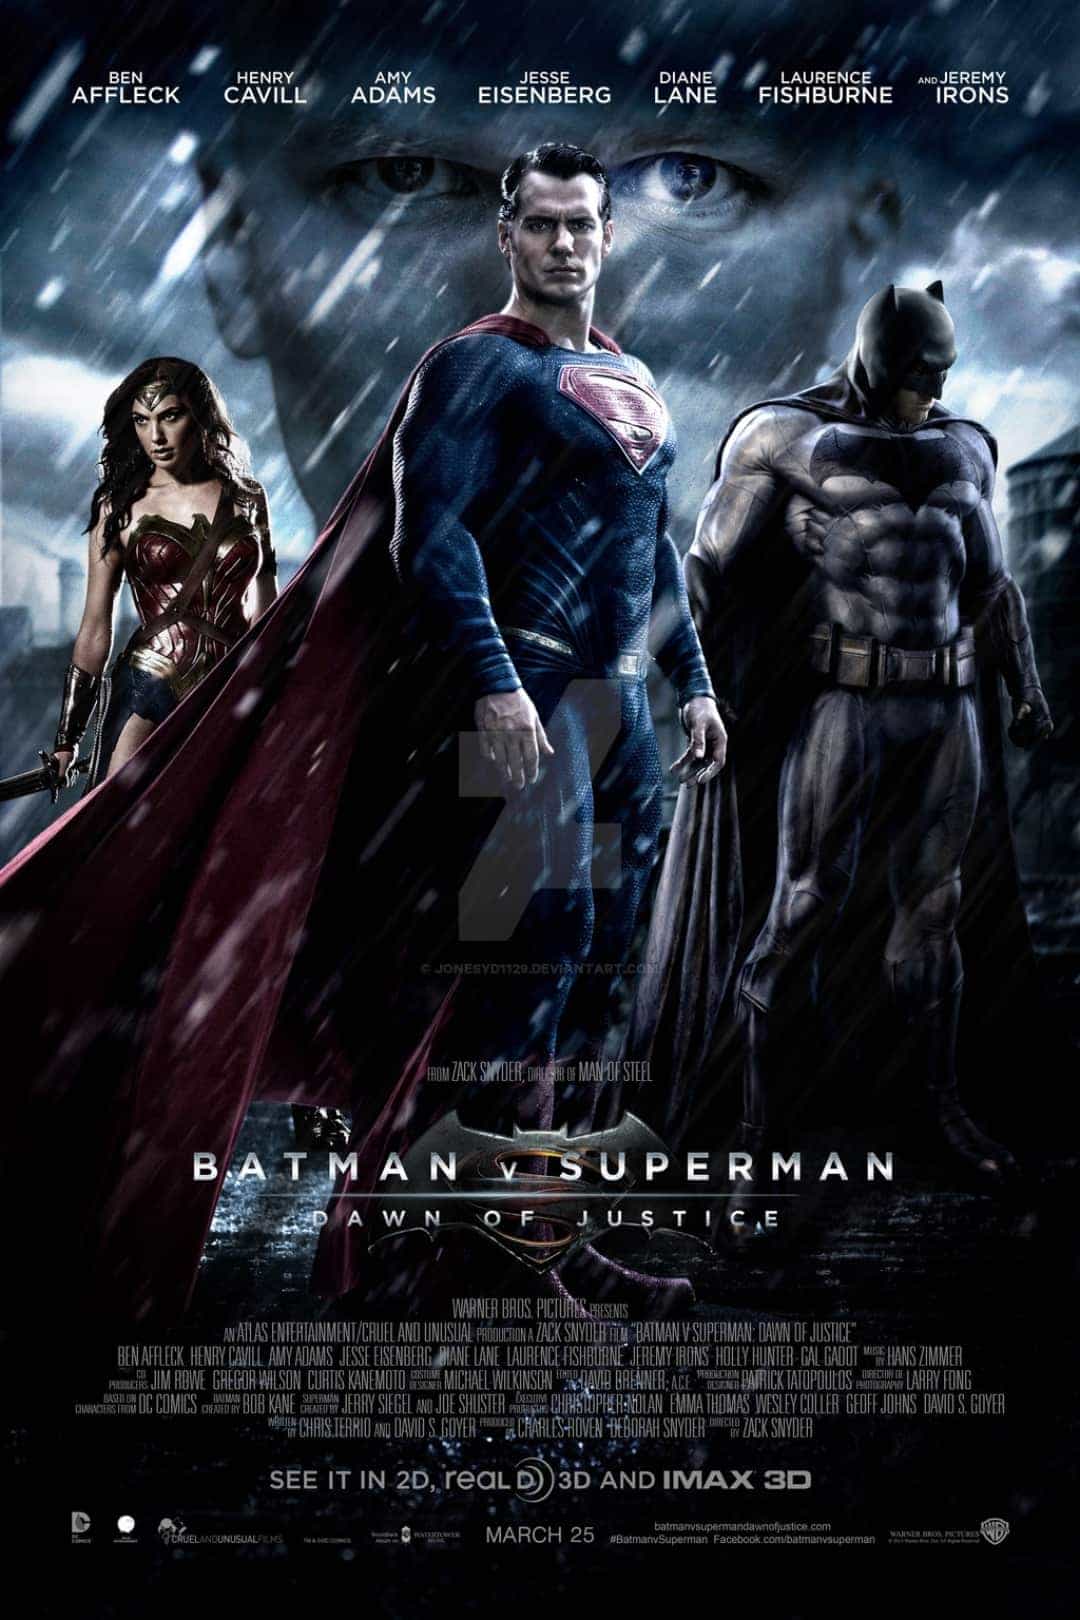 Second trailer for Batman V Superman, epic